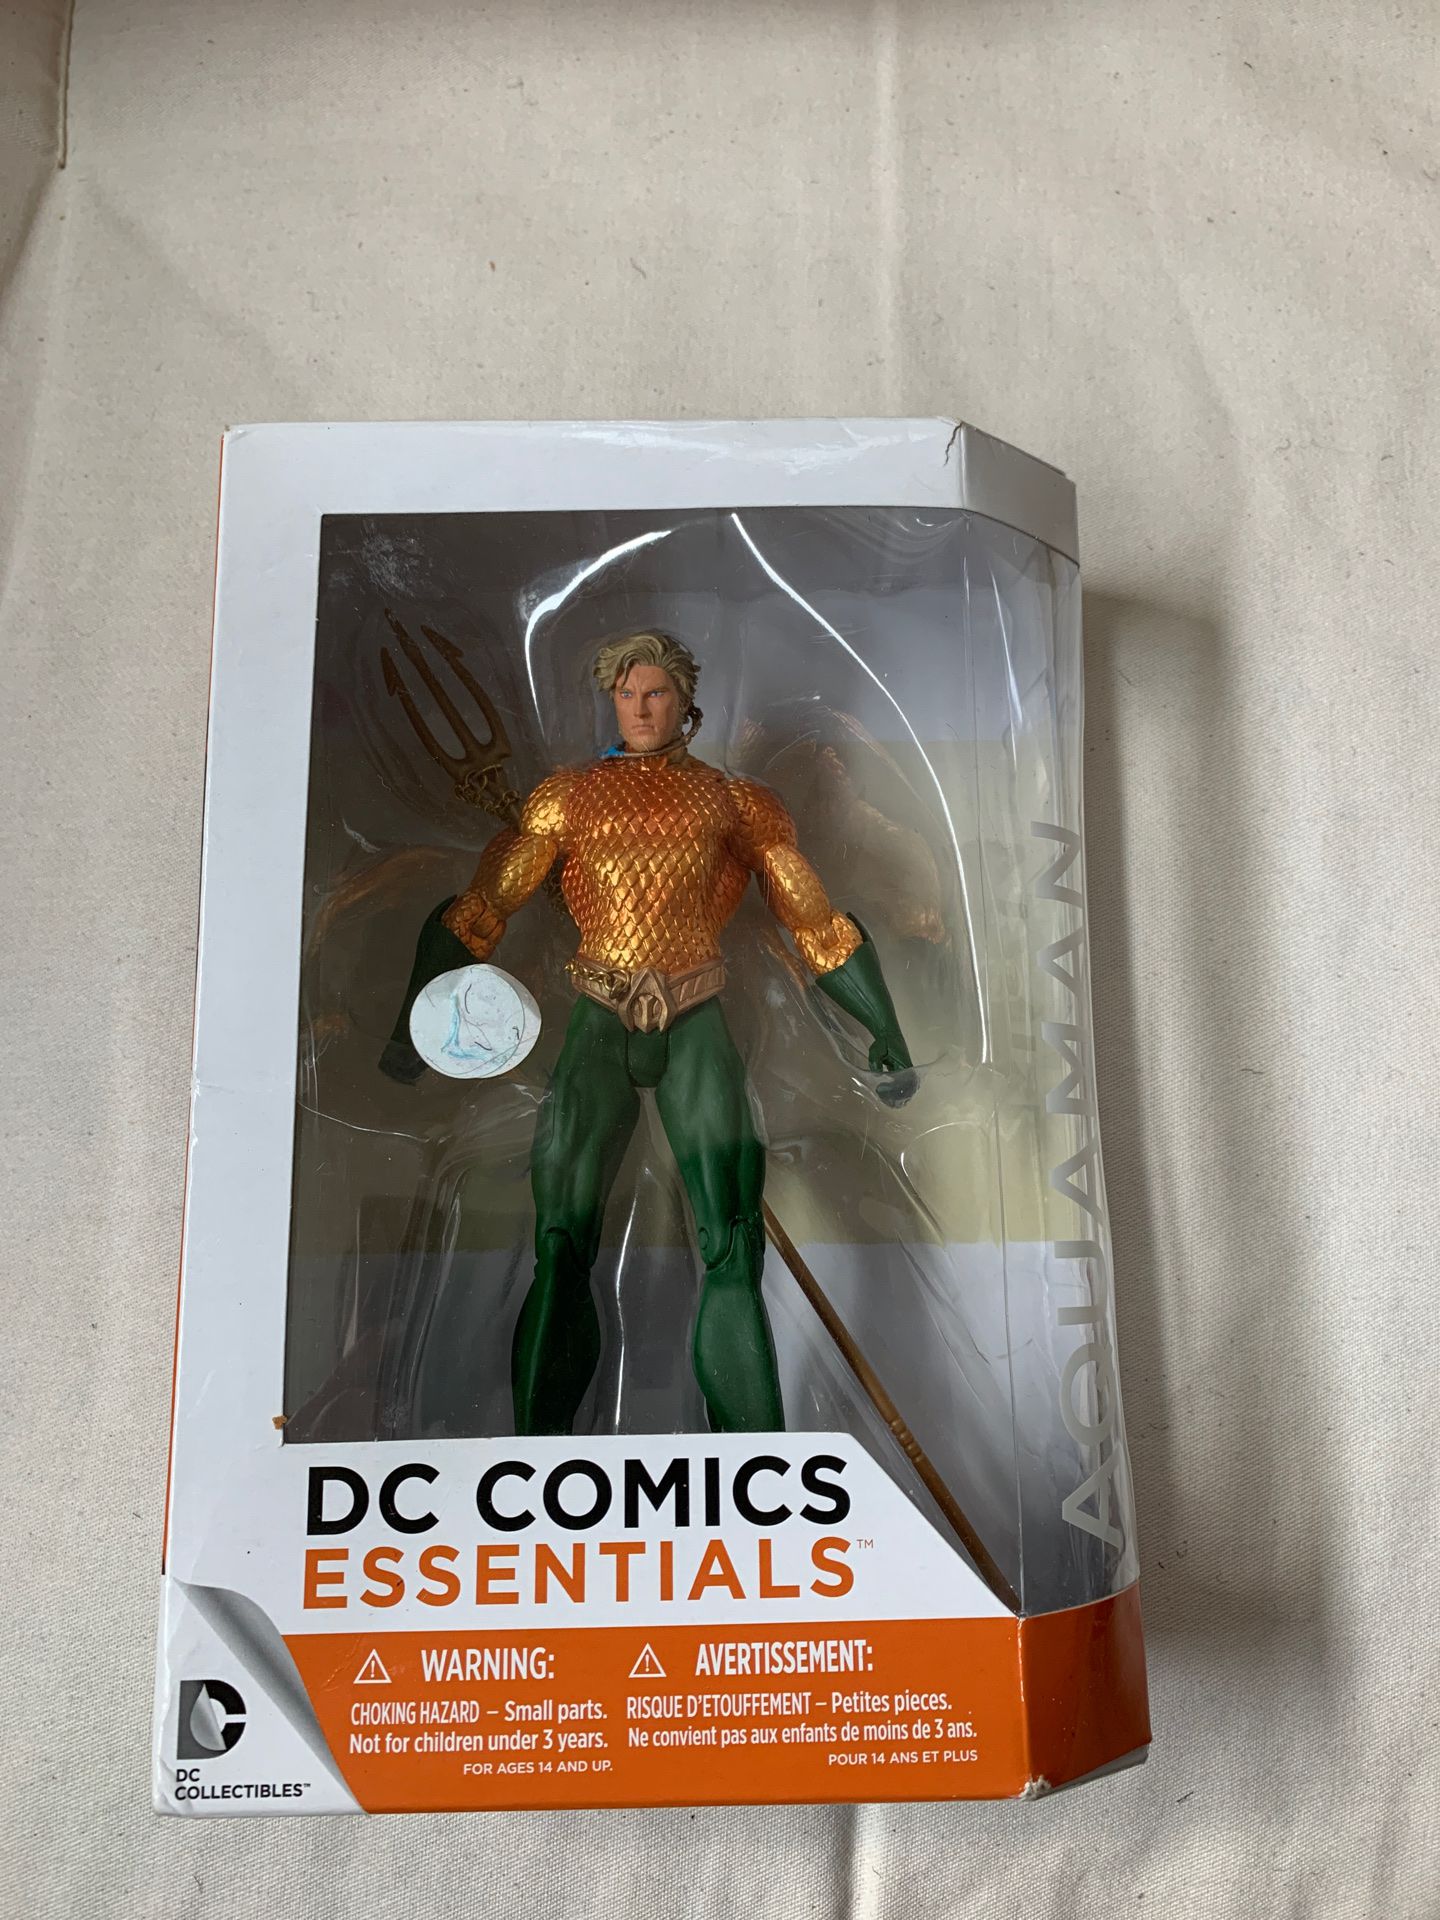 DC Comics Aquaman Action Figure